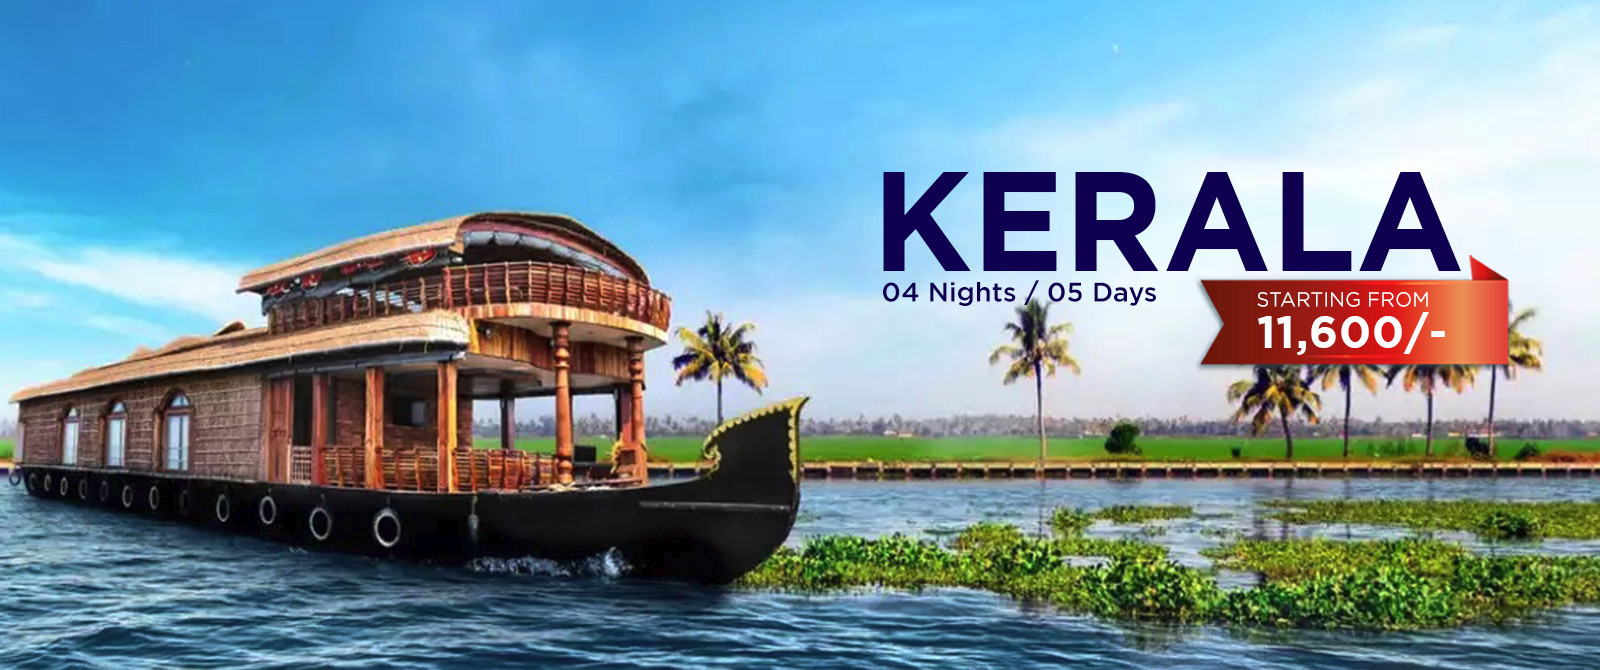 kerala-banner-4night-5-days-img